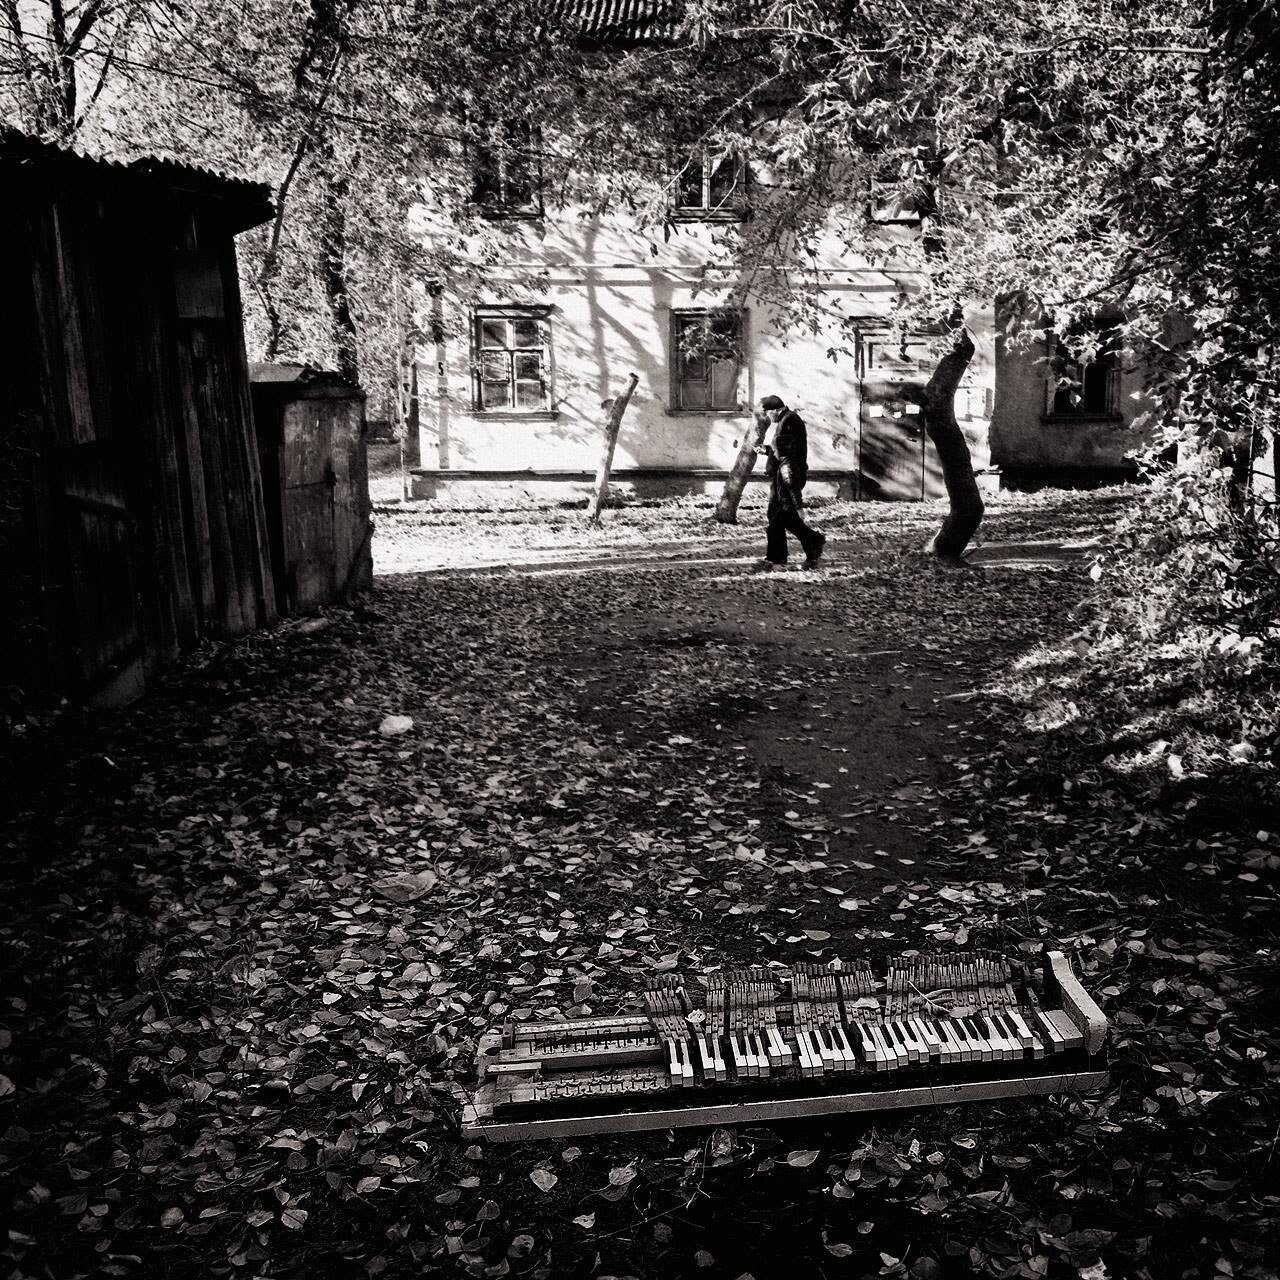 Городок Нефтяников, Омск, октябрь 2017 года. Фотограф Борис Назаренко